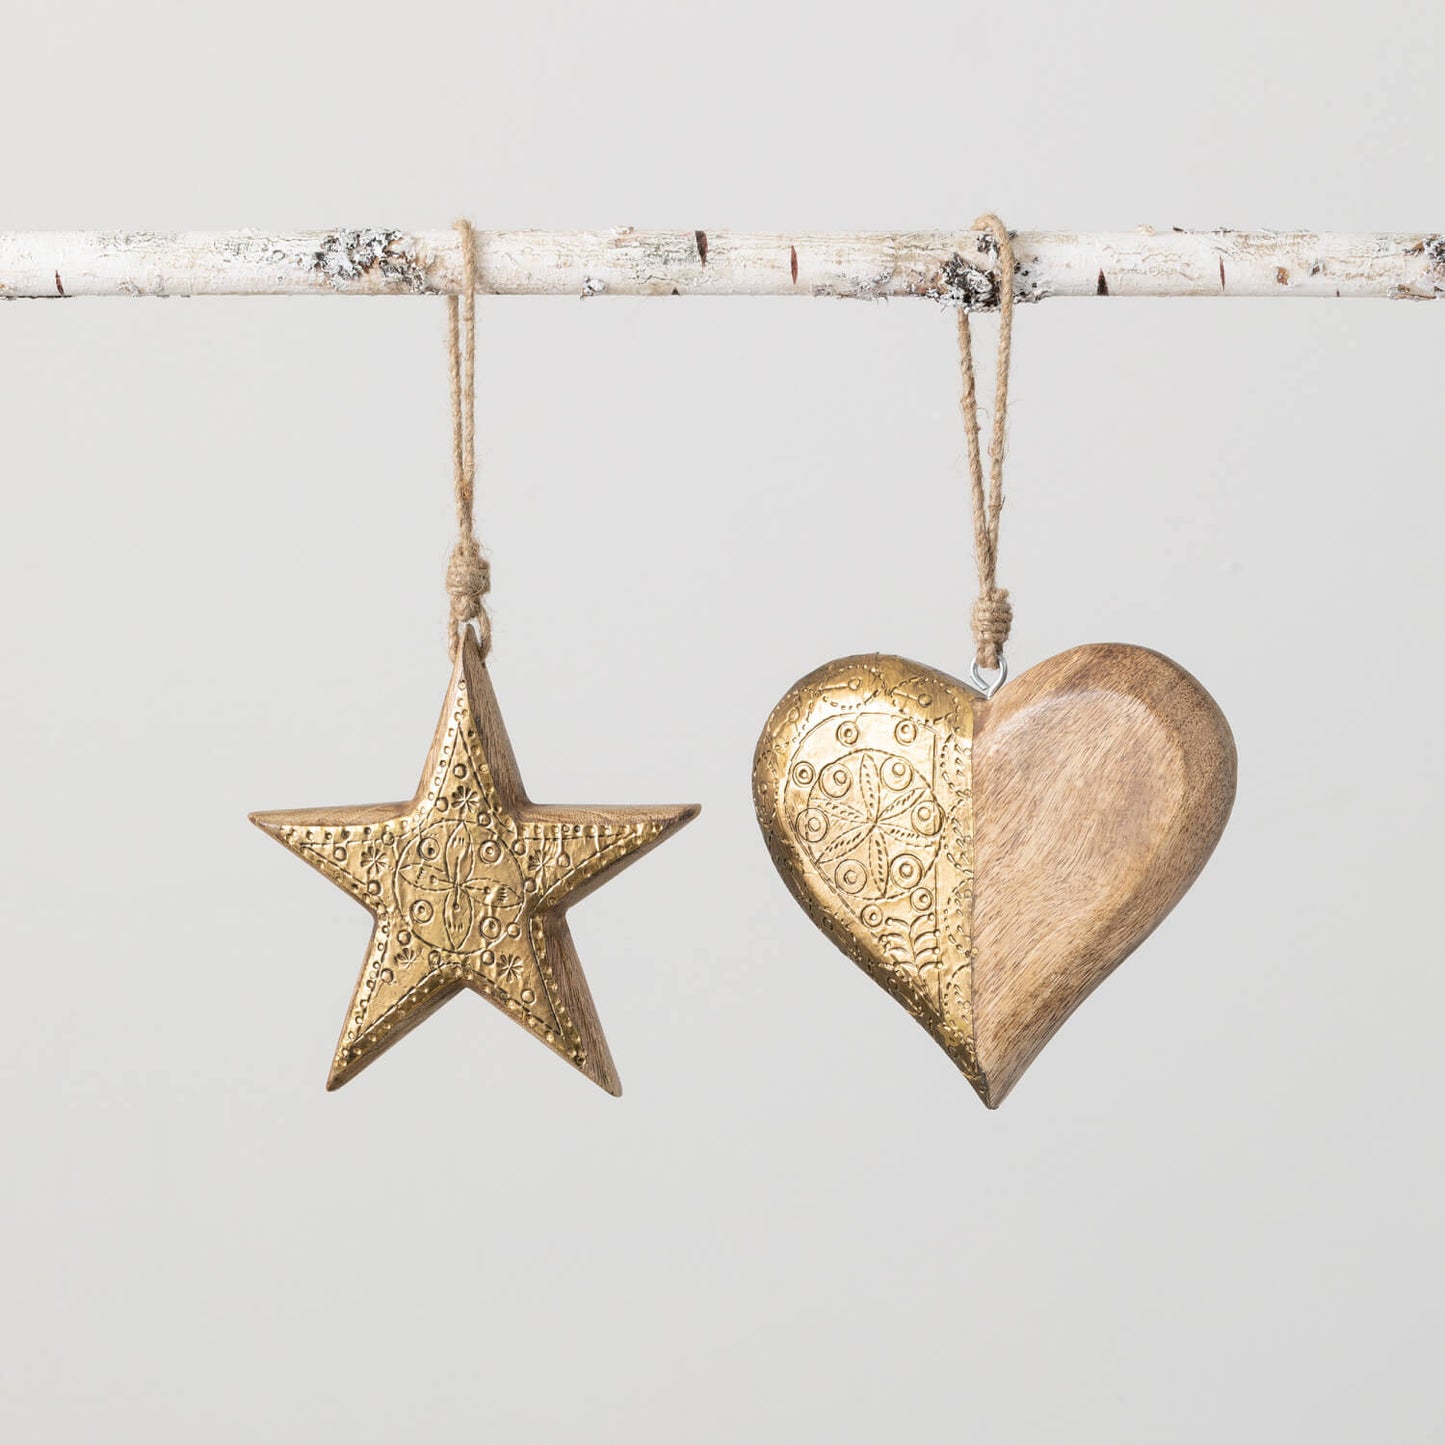 Wood & Metal Stamped Ornaments